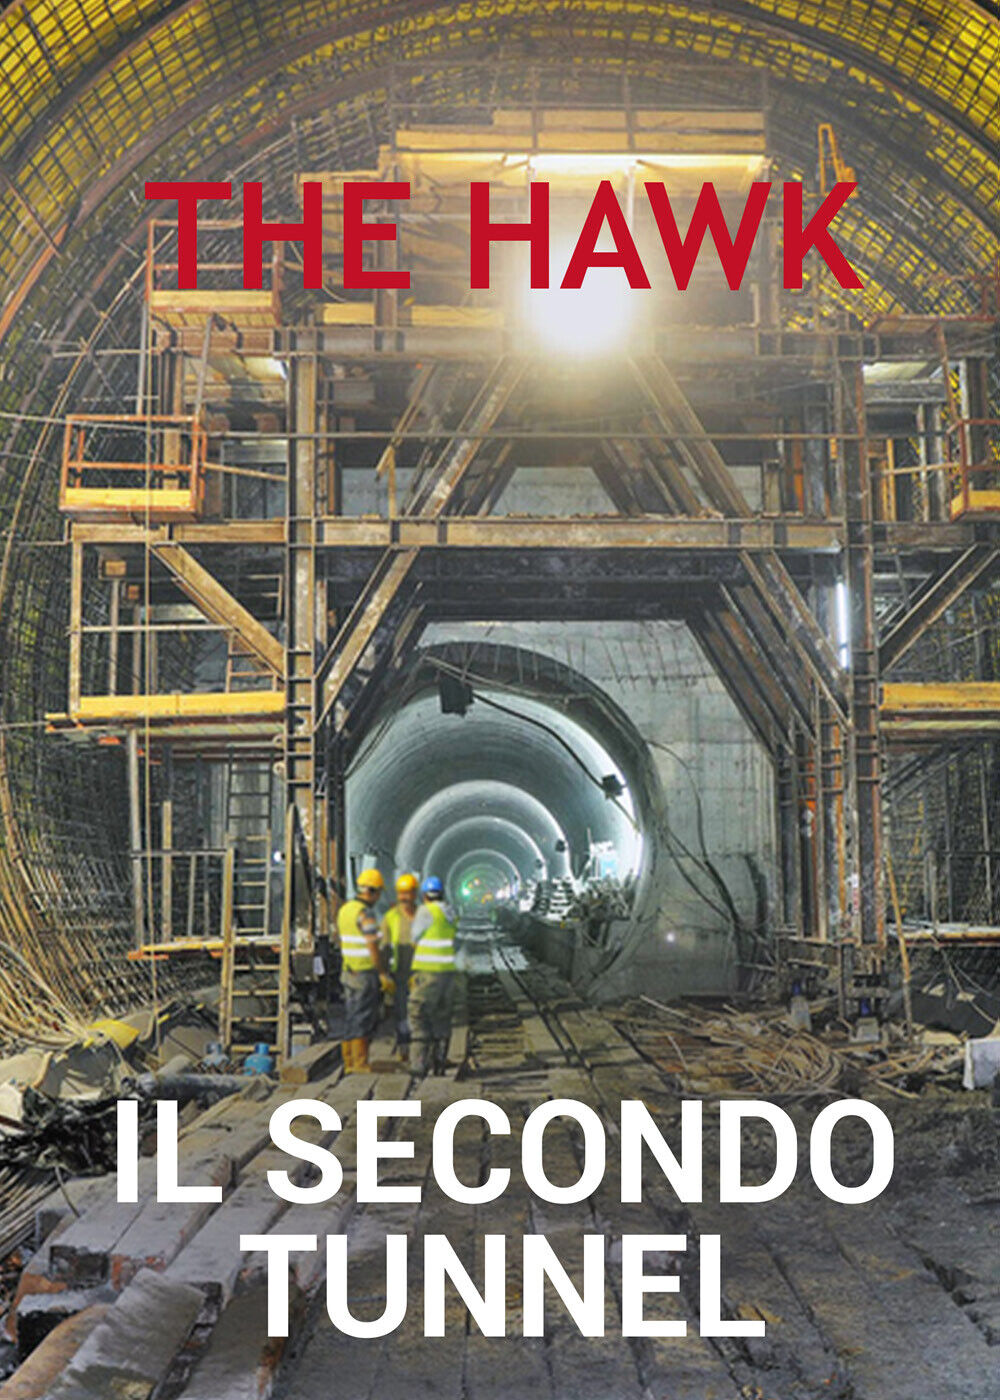 Il secondo tunnel di The Hawk,  2021,  Youcanprint